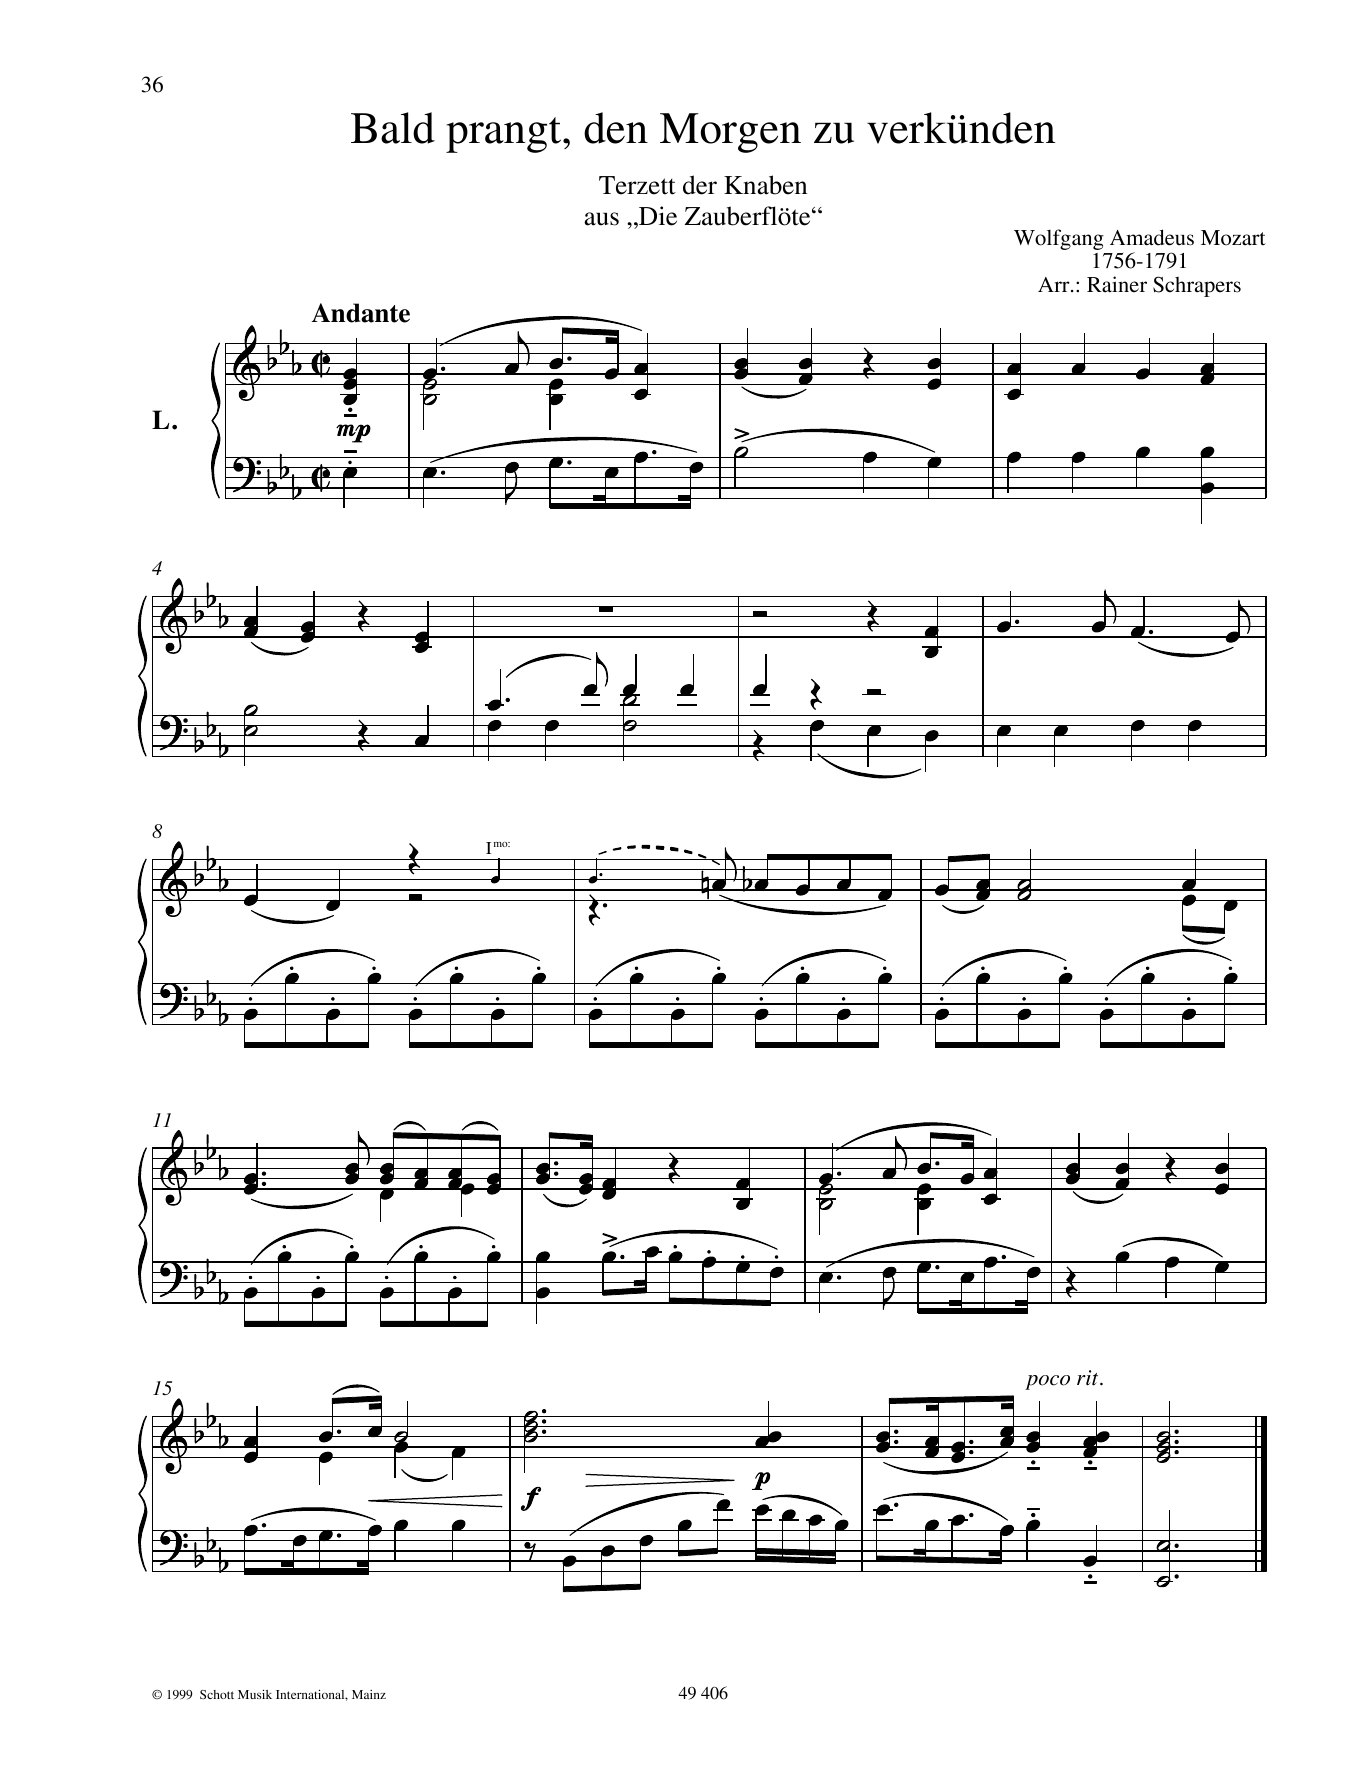 Wolfgang Amadeus Mozart Bald prangt, den Morgen zu verkünden Sheet Music Notes & Chords for Piano Duet - Download or Print PDF